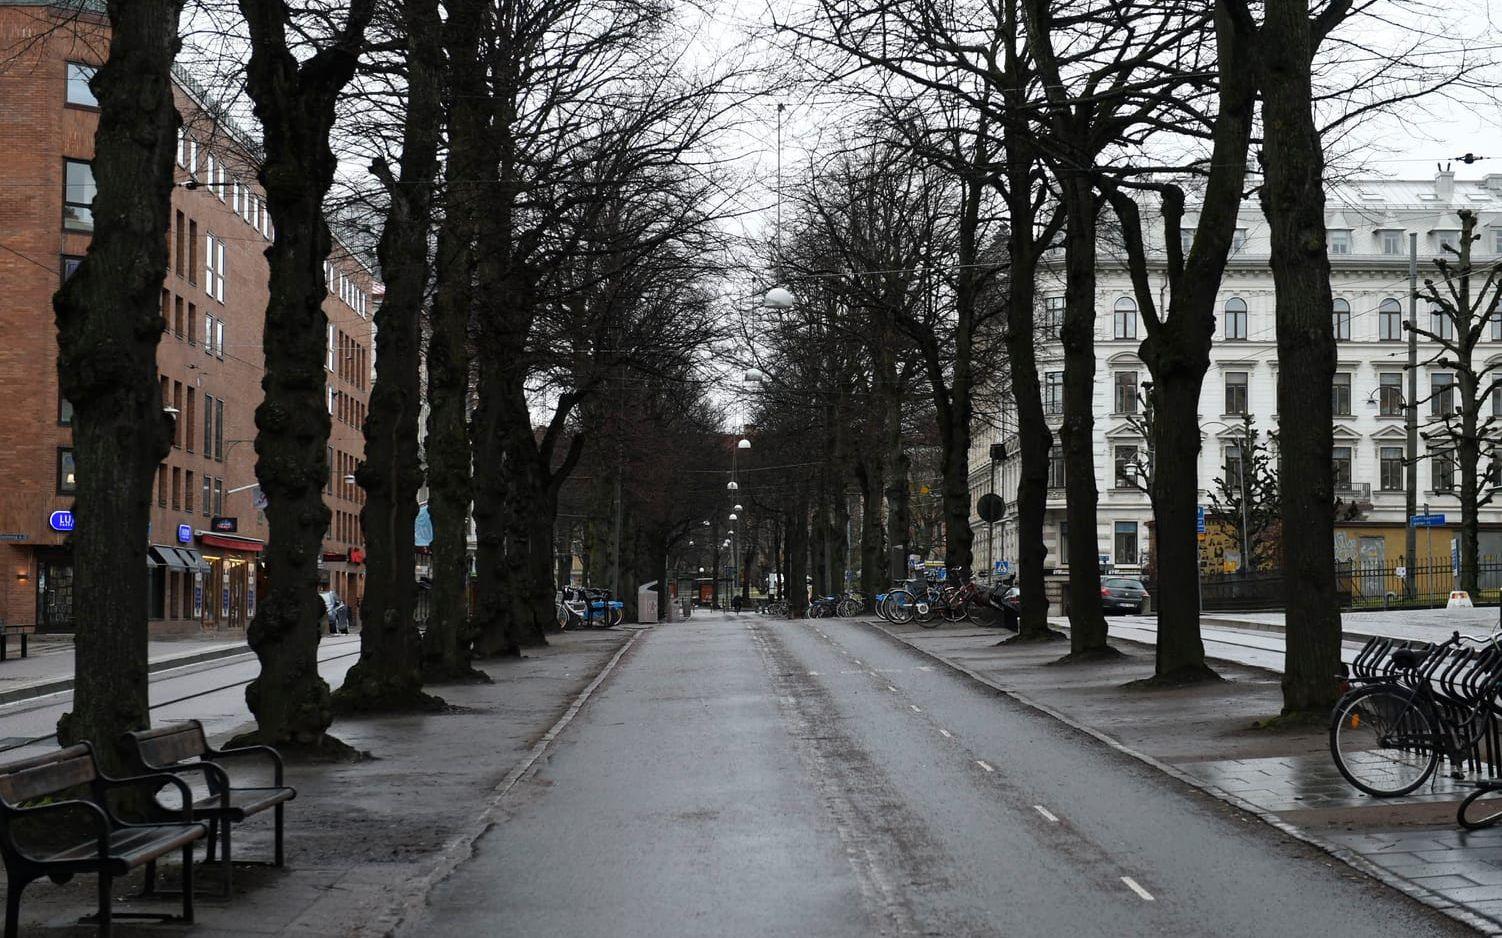 Dagen efter var det lugnt på Vasagatan, inga spår av det inträffade kunde ses. Bild: Olof Ohlsson